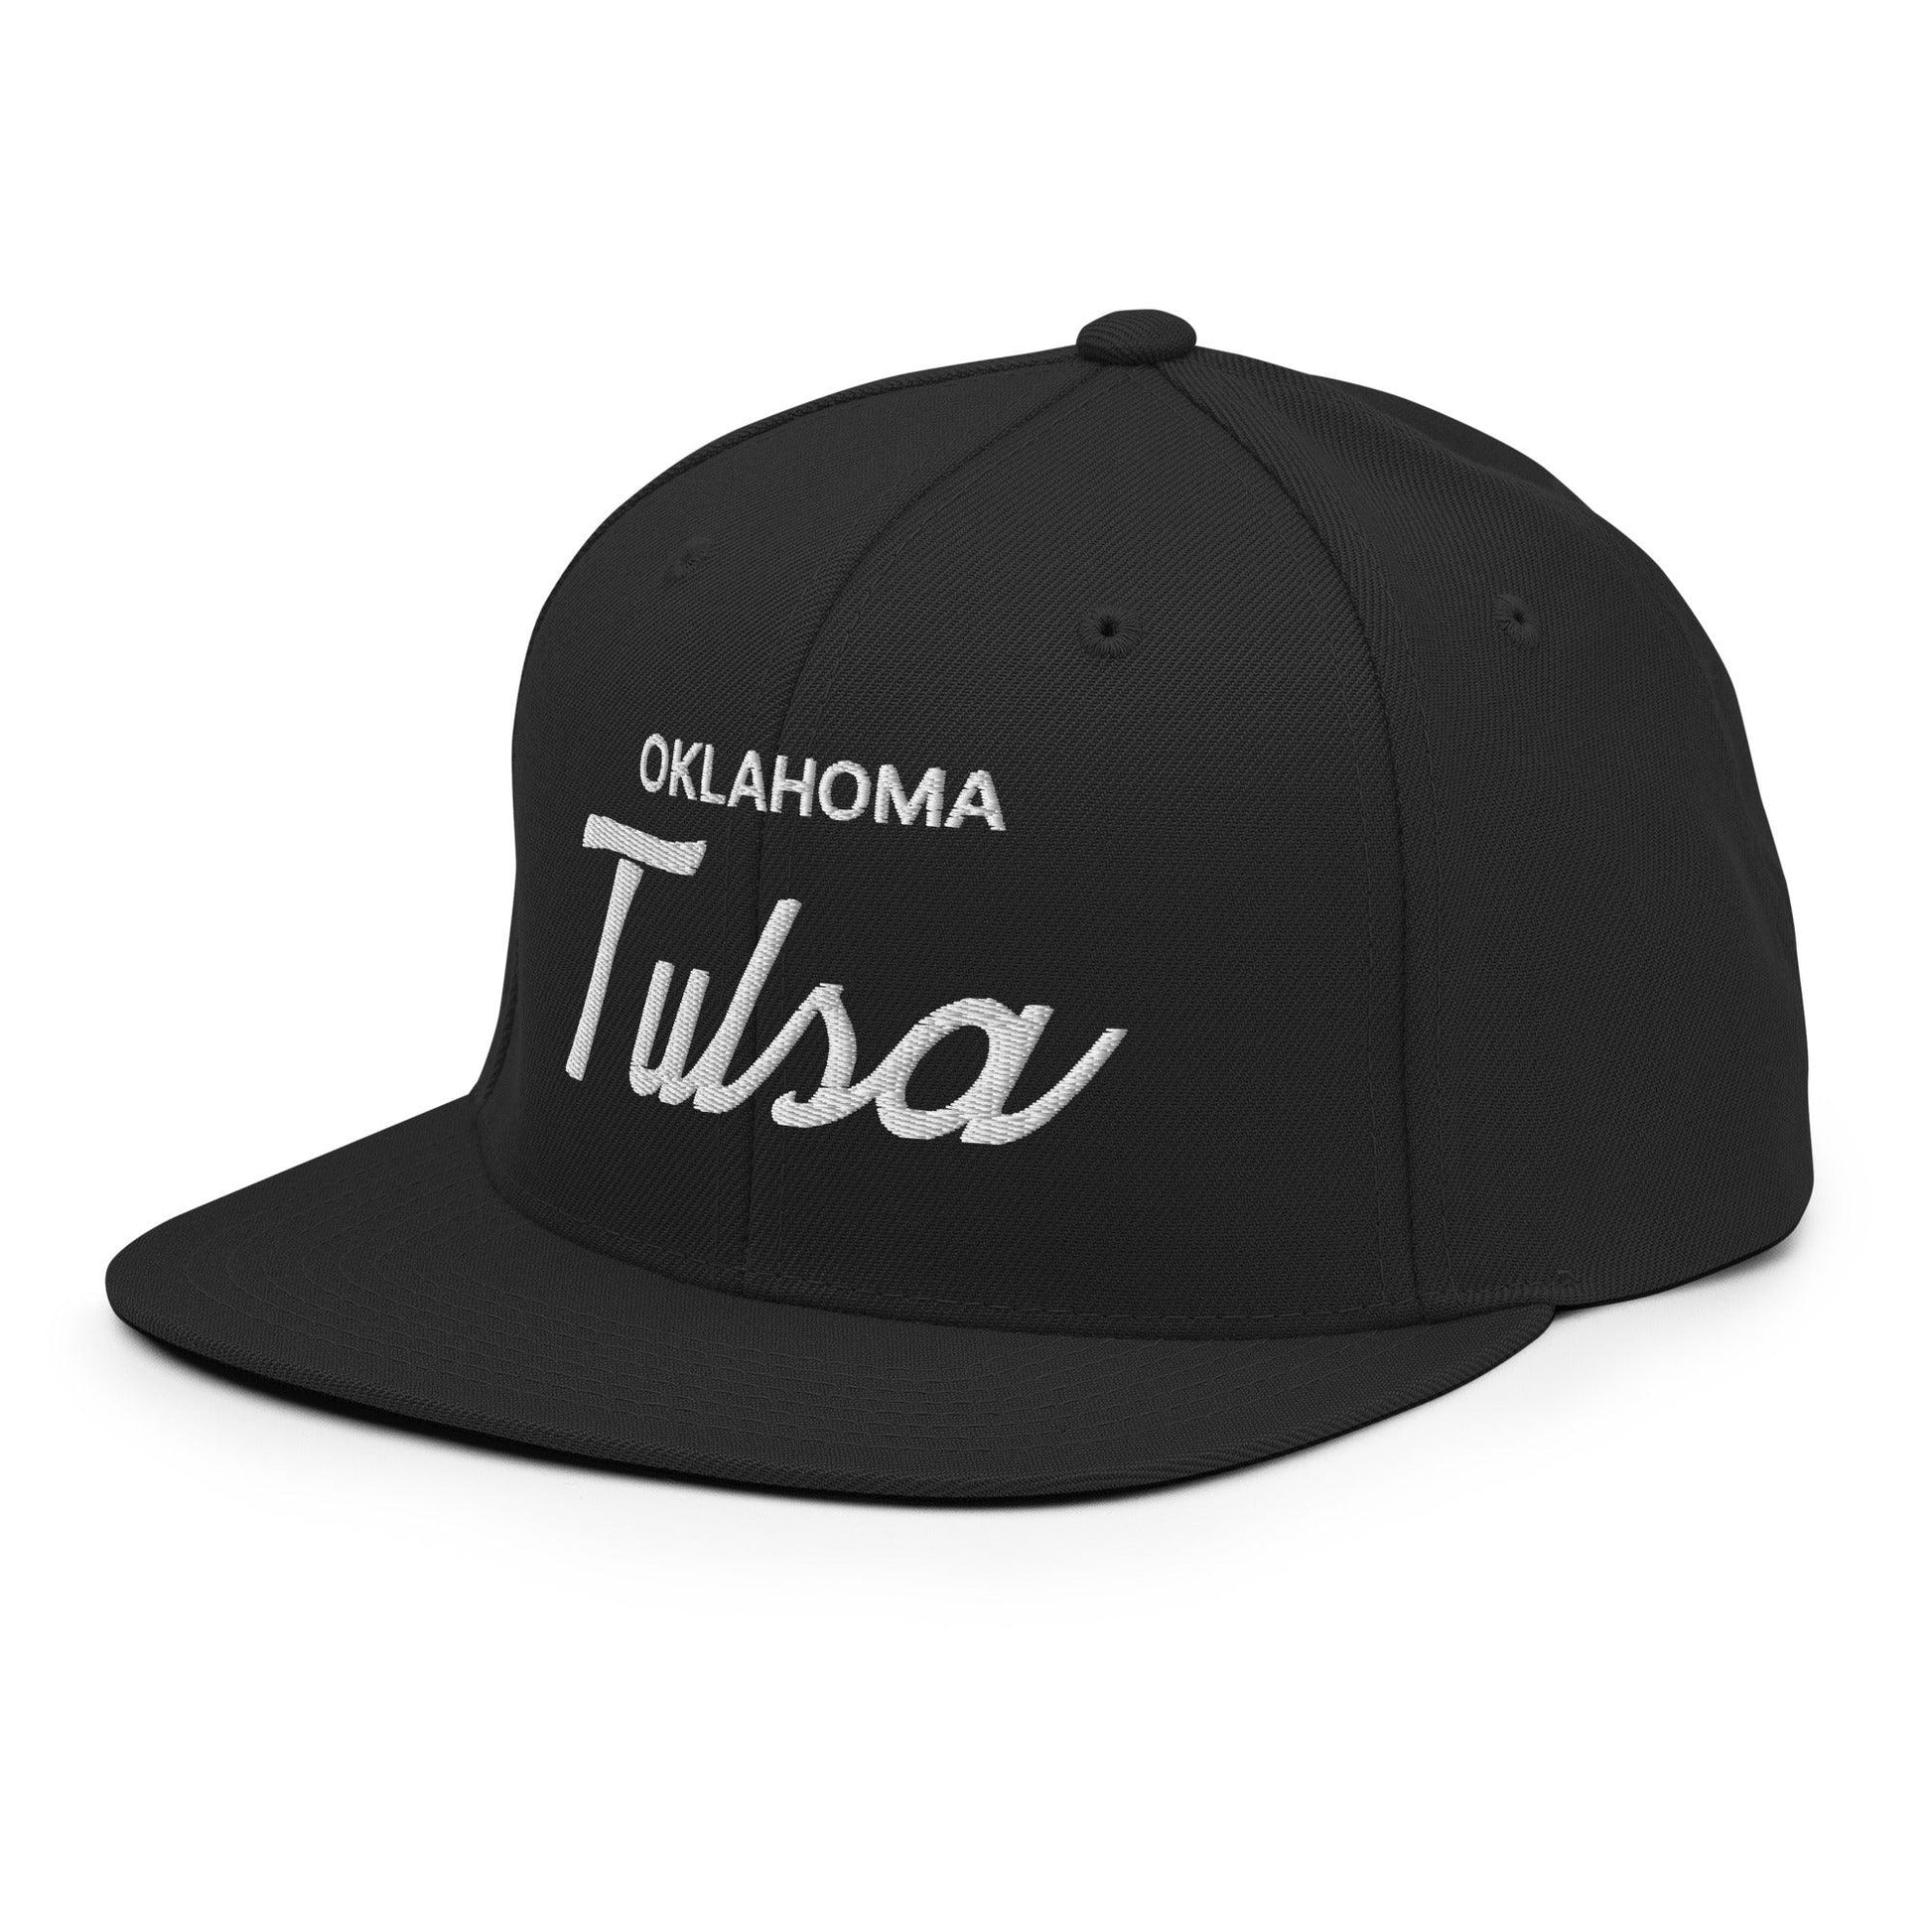 Tulsa Oklahoma II Vintage Sports Script Snapback Hat Black